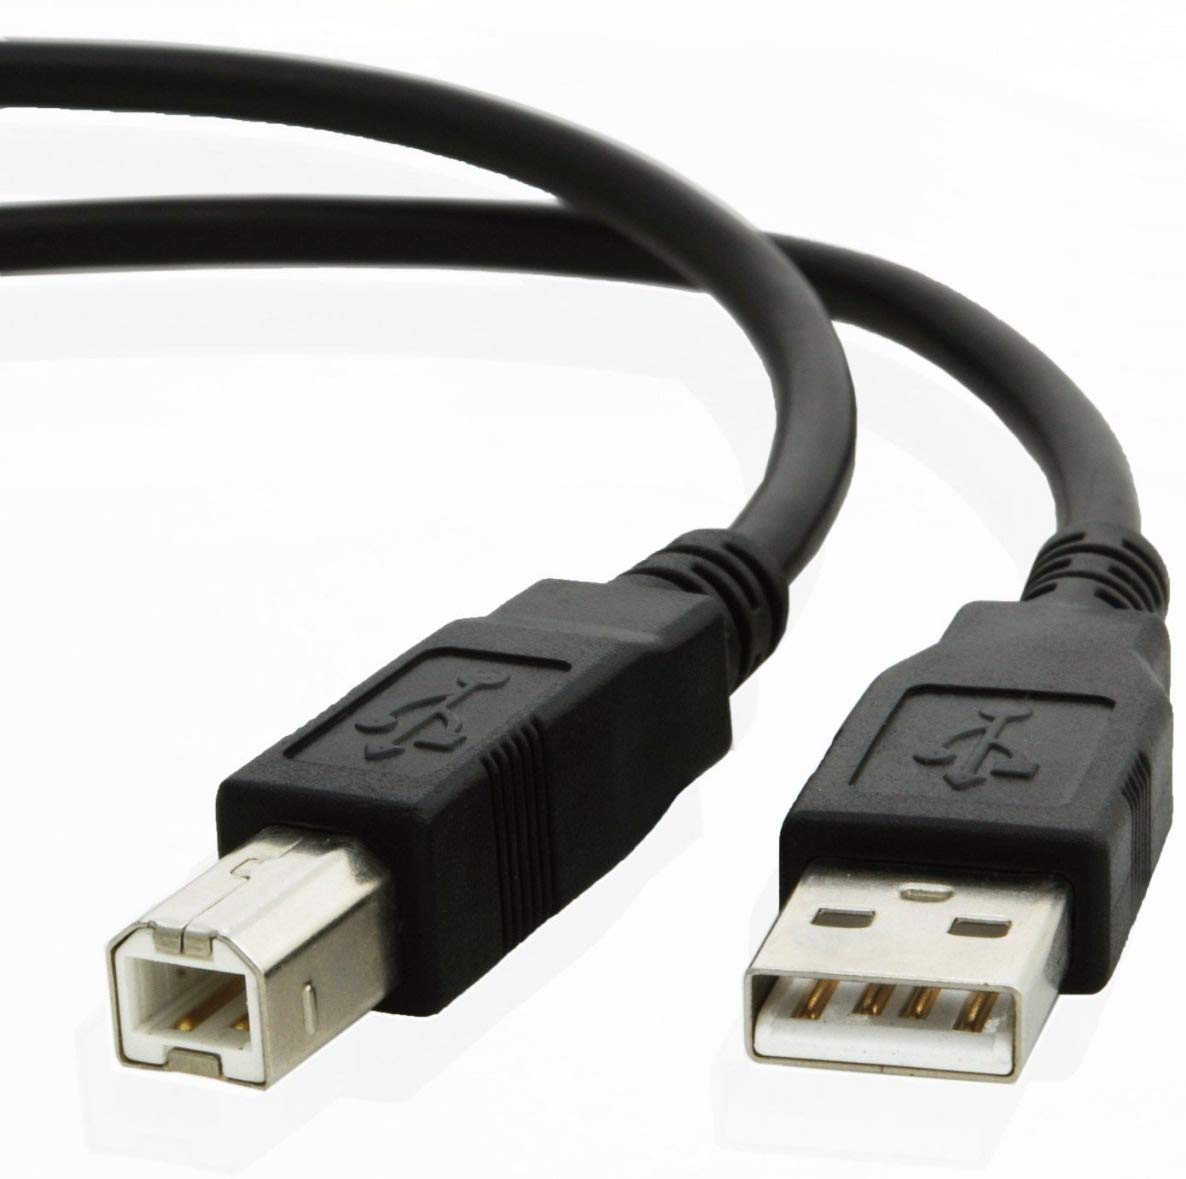 CABLE USB A-B PARA IMPRESORA 1 M